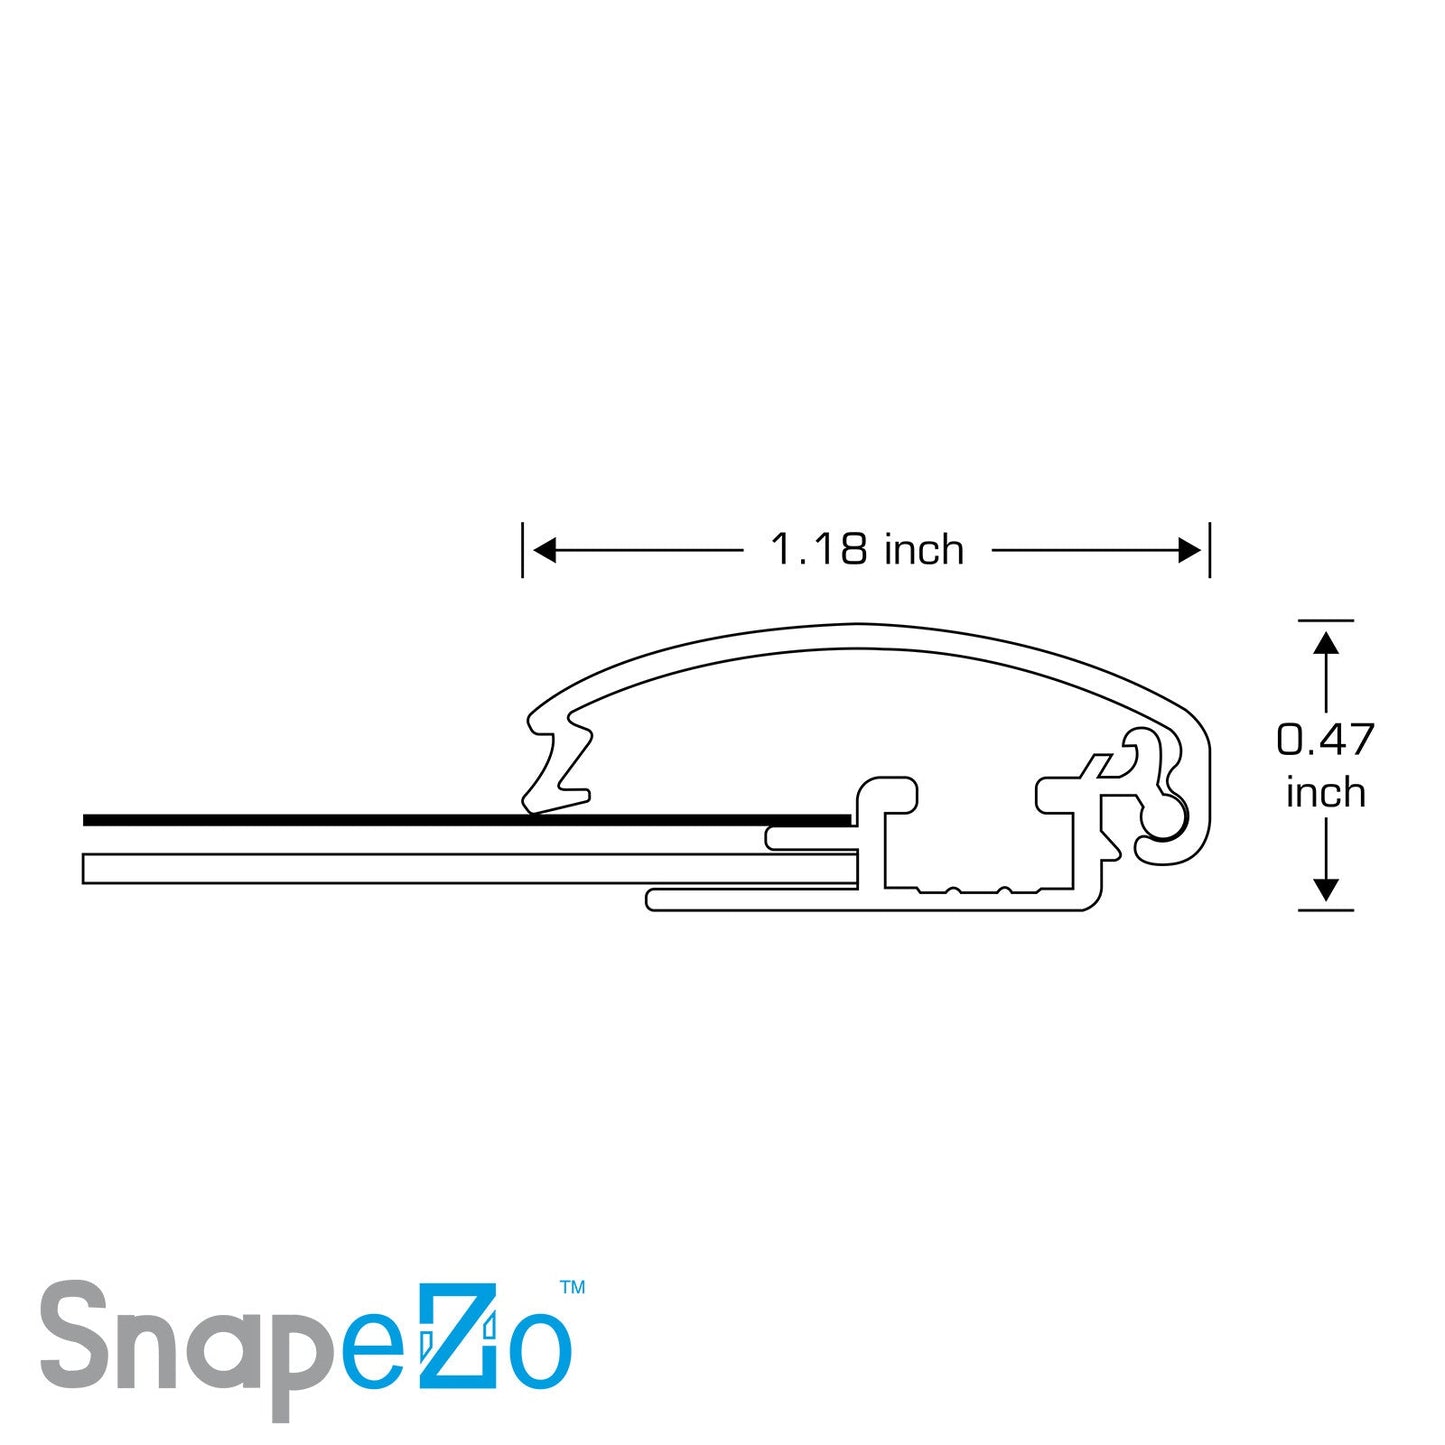 26x26 White SnapeZo® Snap Frame - 1.2" Profile